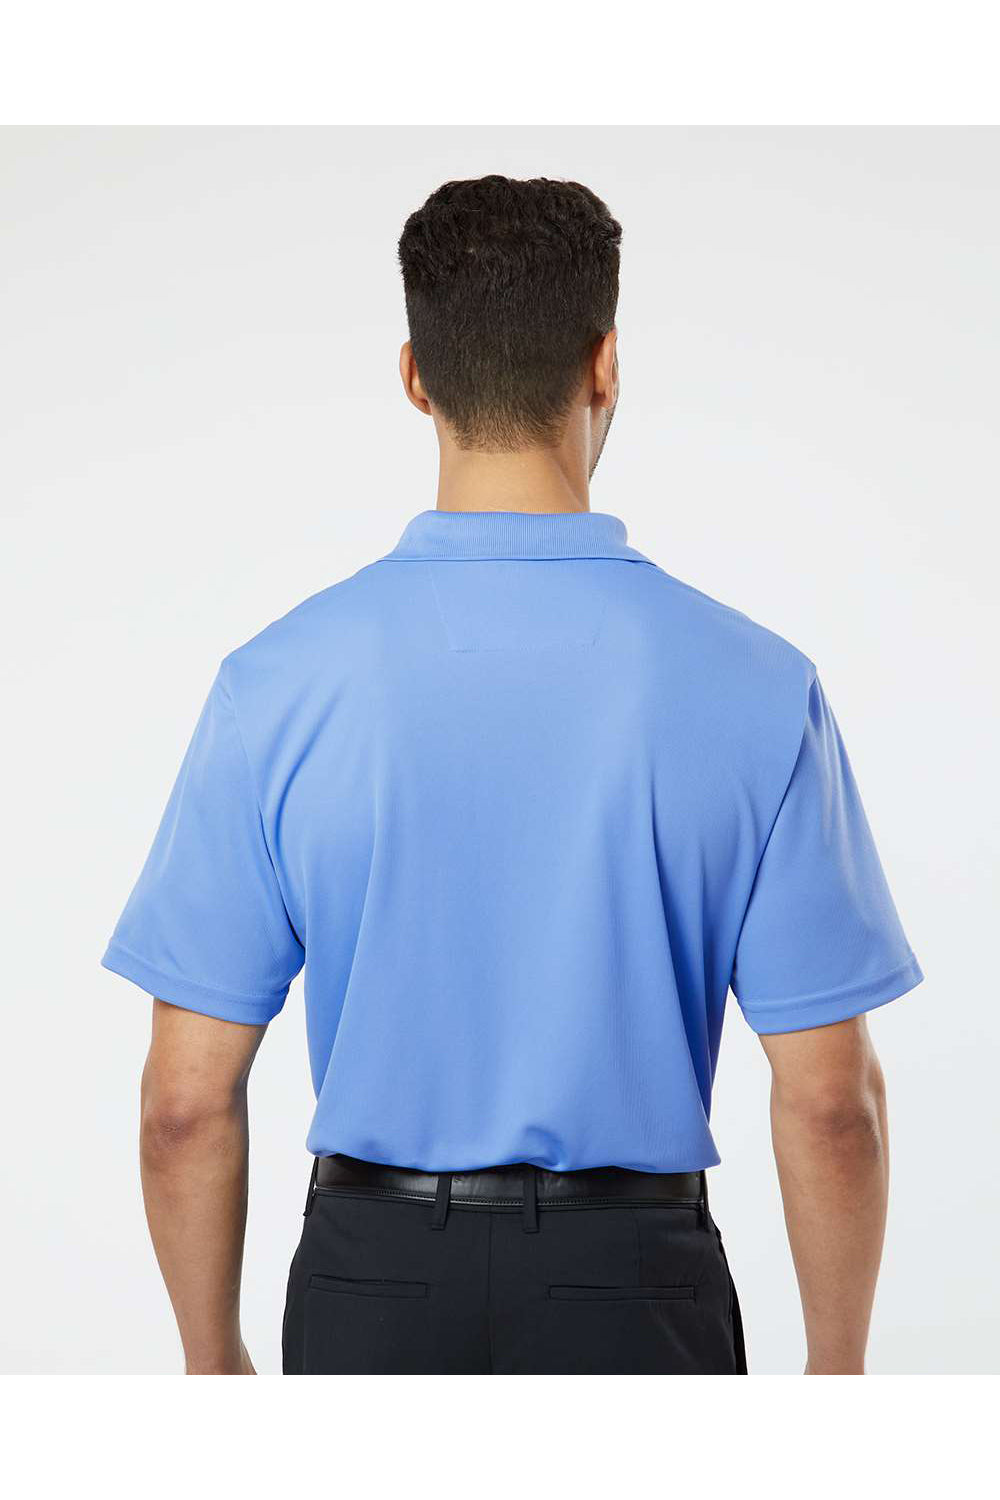 Paragon 100 Mens Saratoga Performance Mini Mesh Short Sleeve Polo Shirt Bimini Blue Model Back